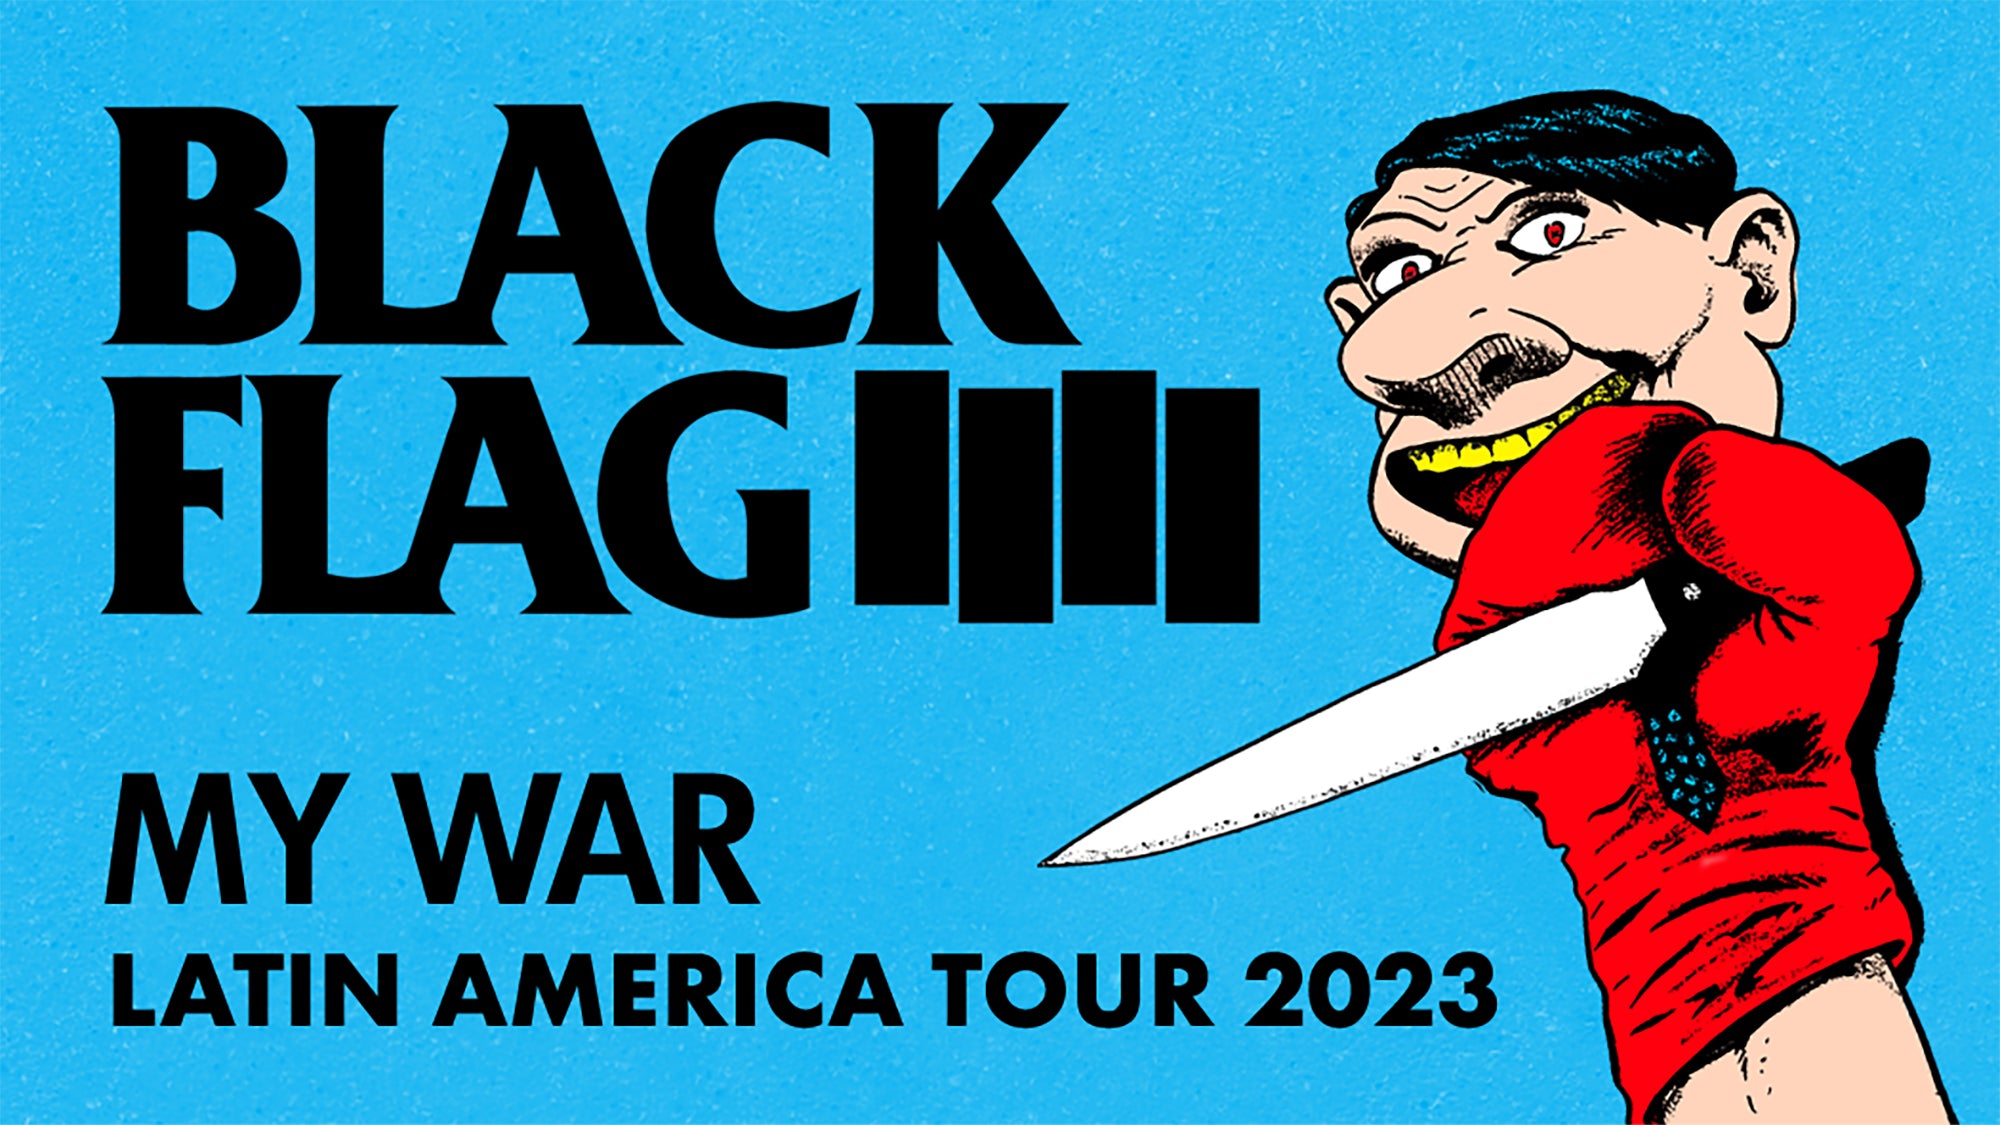 Black Flag Latin America Tour 2023